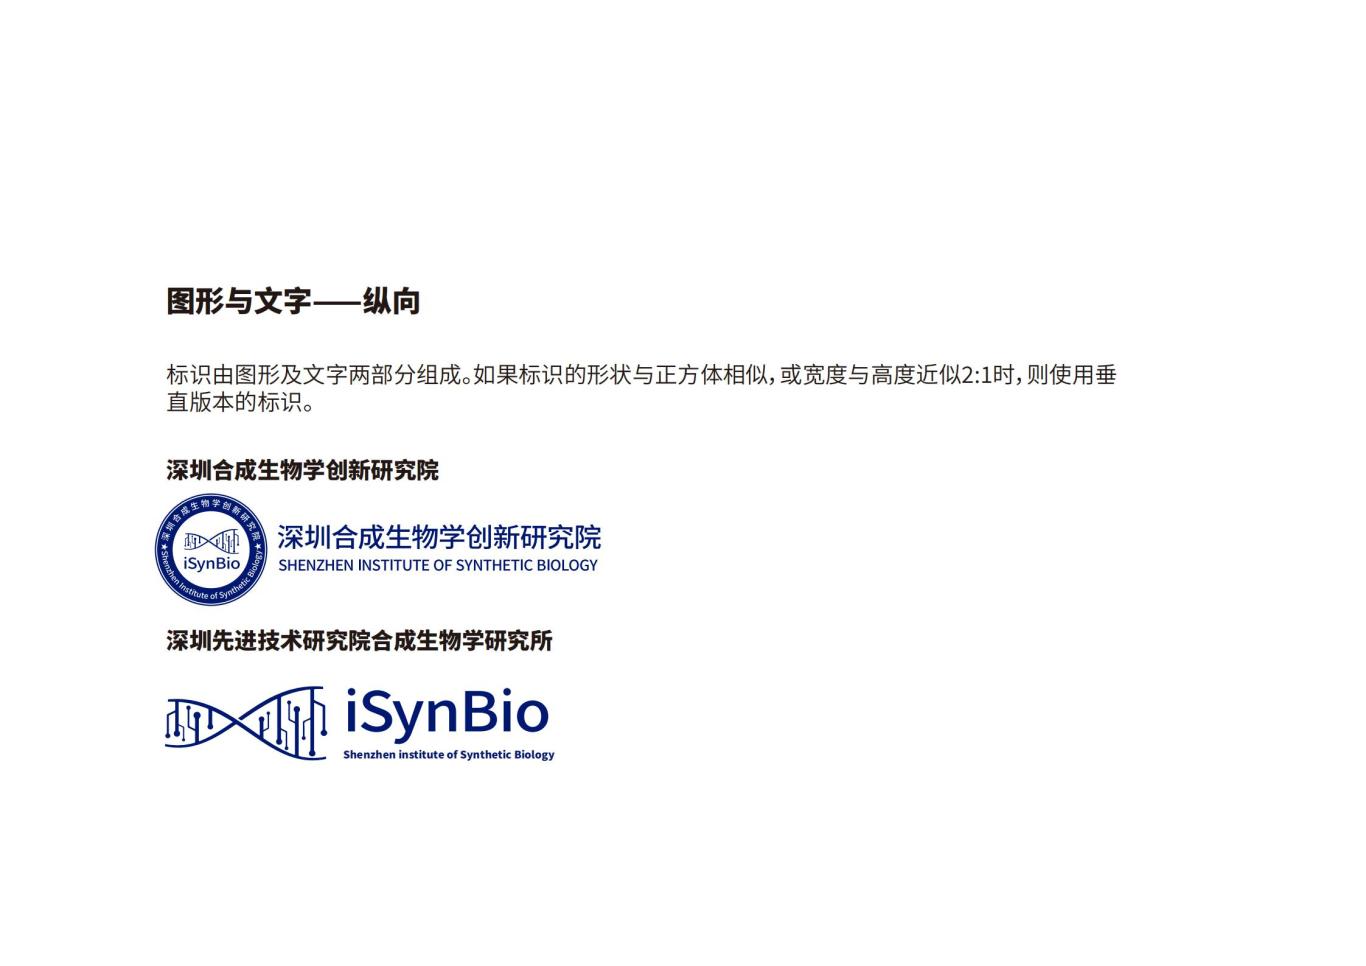 深圳合成生物学创新研究院品牌设计规范图9